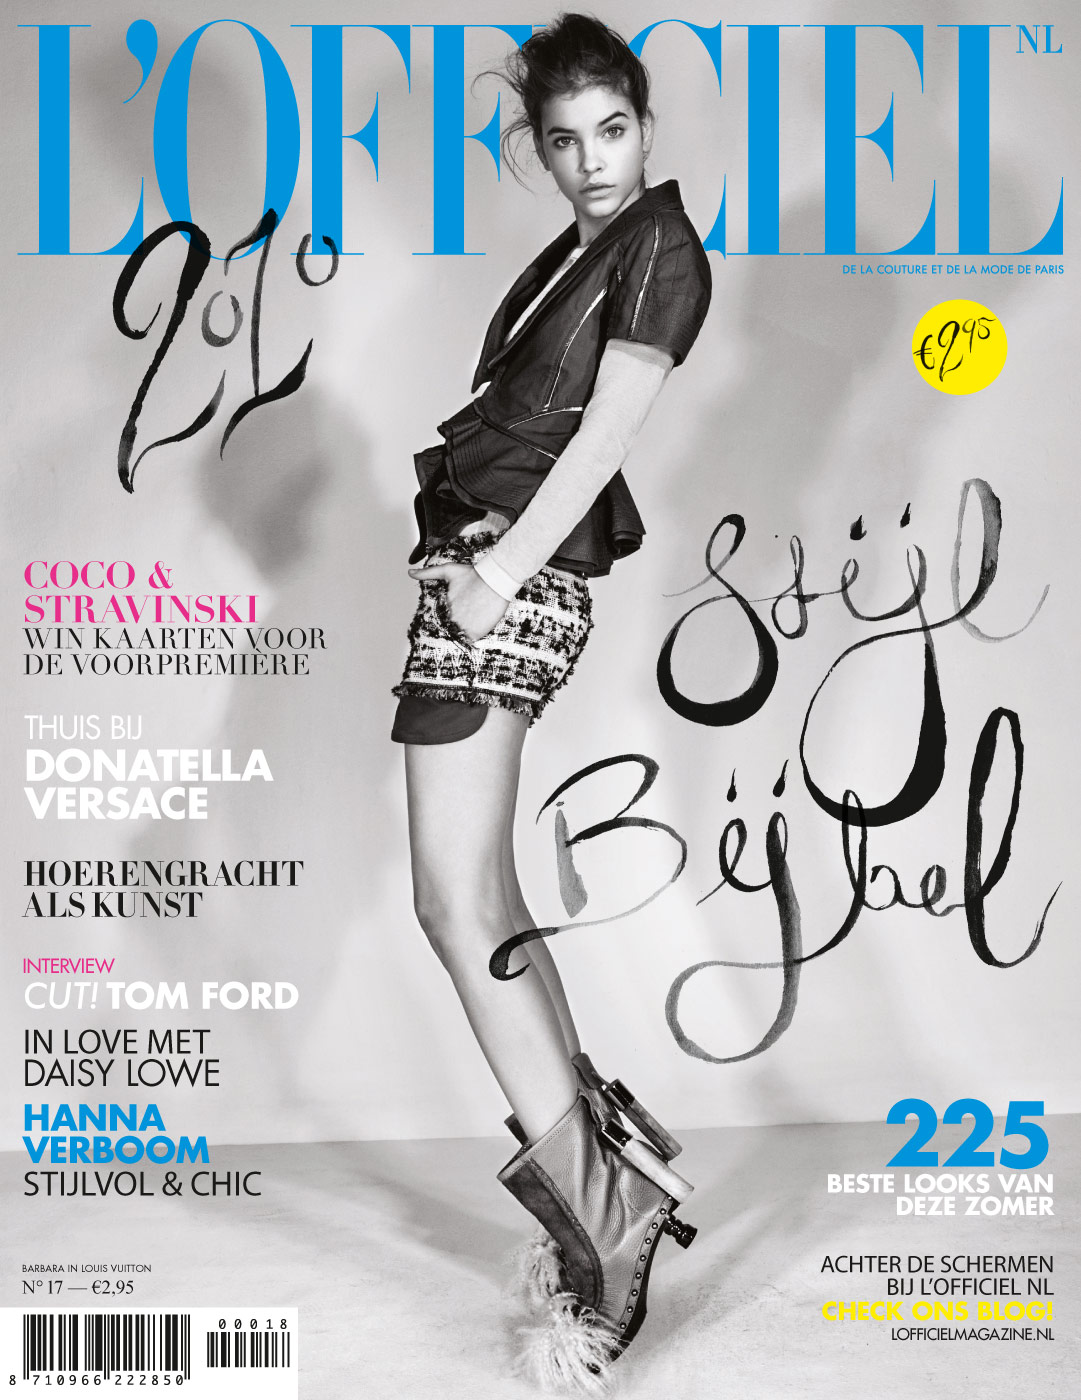 L'Officiel NL, design, arte direction, fashion magazine